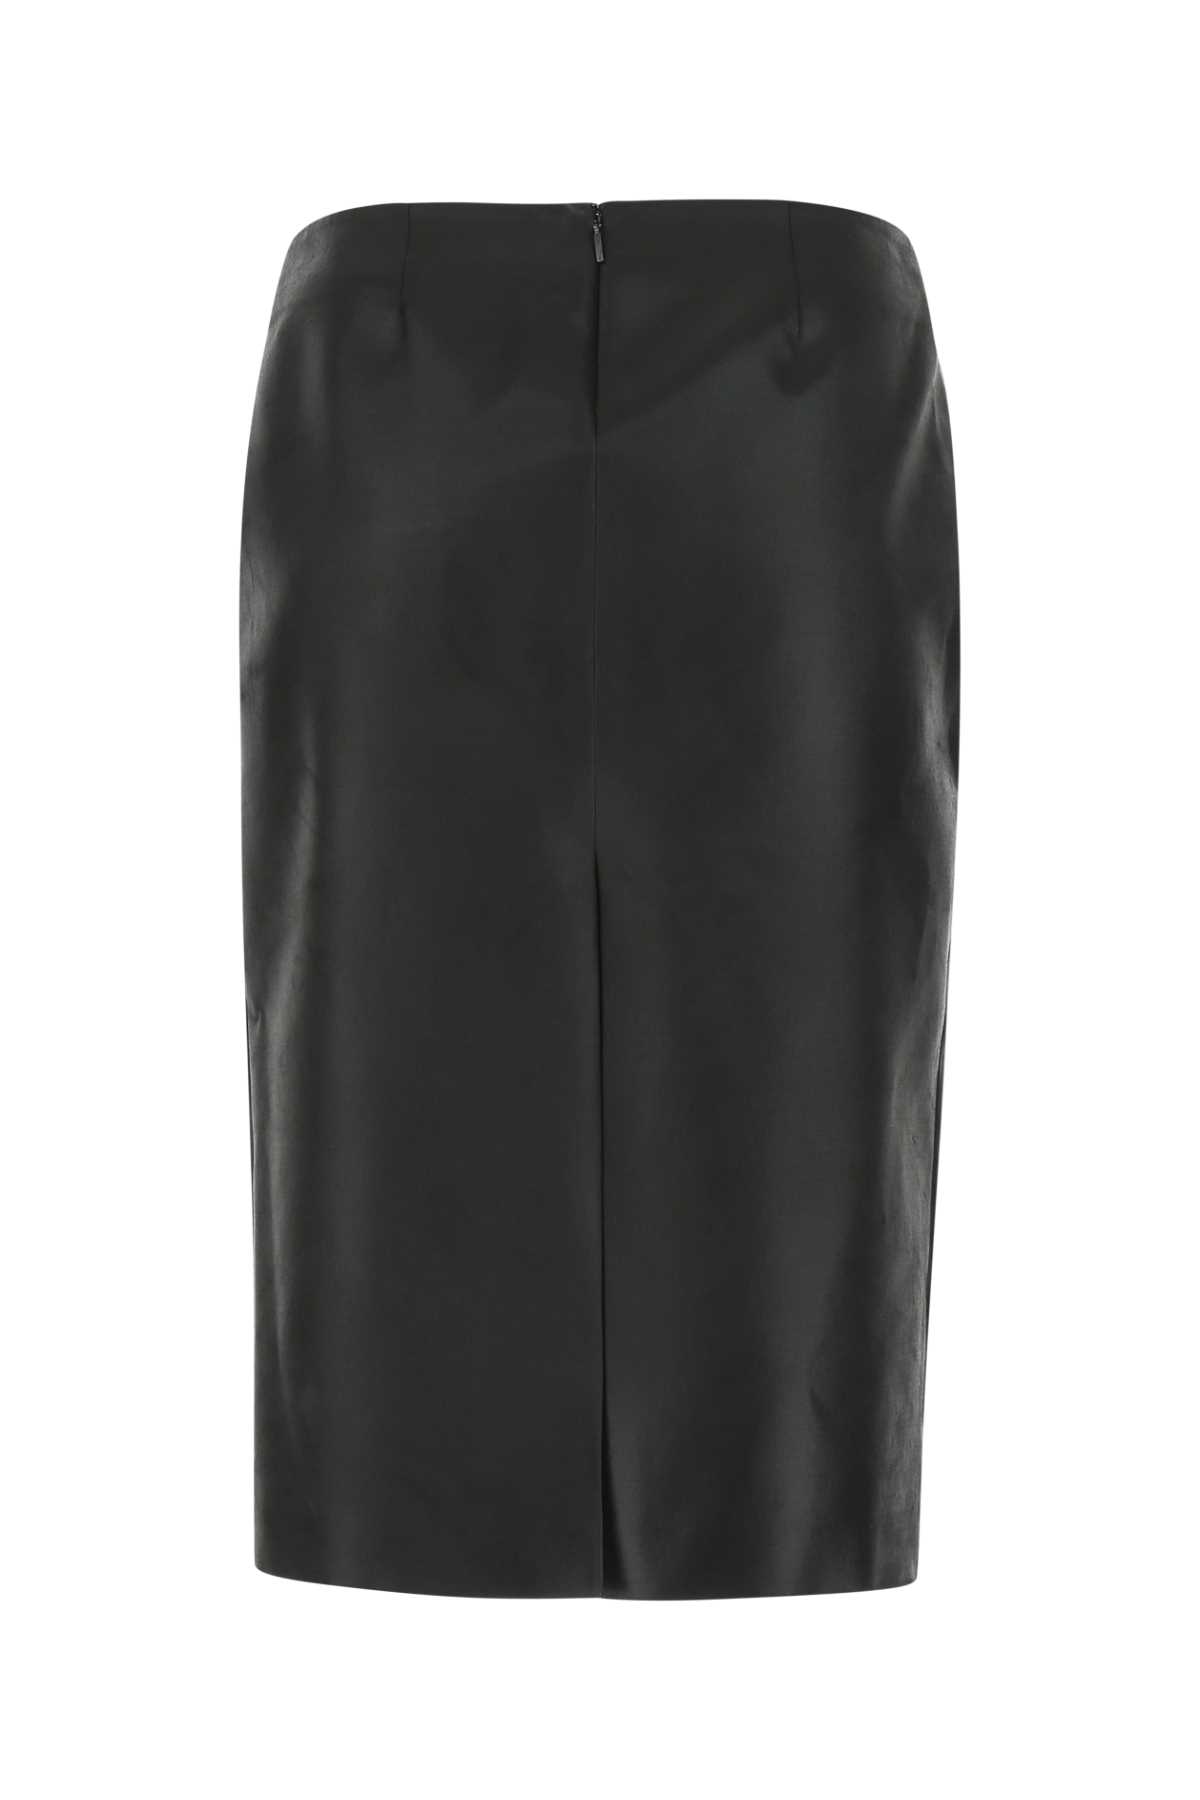 Saint Laurent Black Satin Skirt In 1000